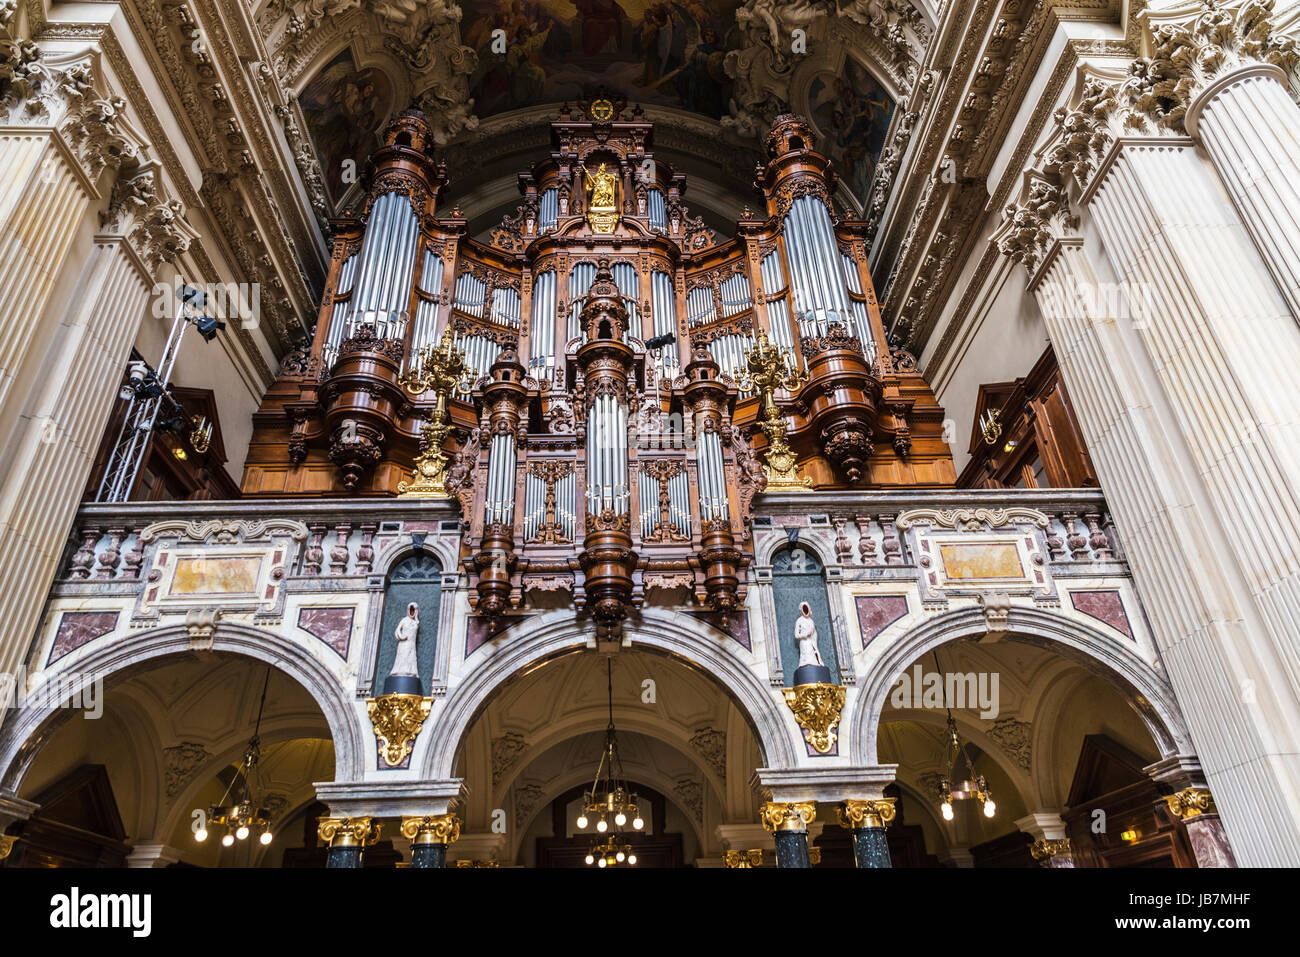 Berlín, Alemania - 13 de abril, 2017: el órgano de la Catedral de Berlín (Berliner Dom) de estilo neobarroco en Berlín, Alemania. Foto de stock